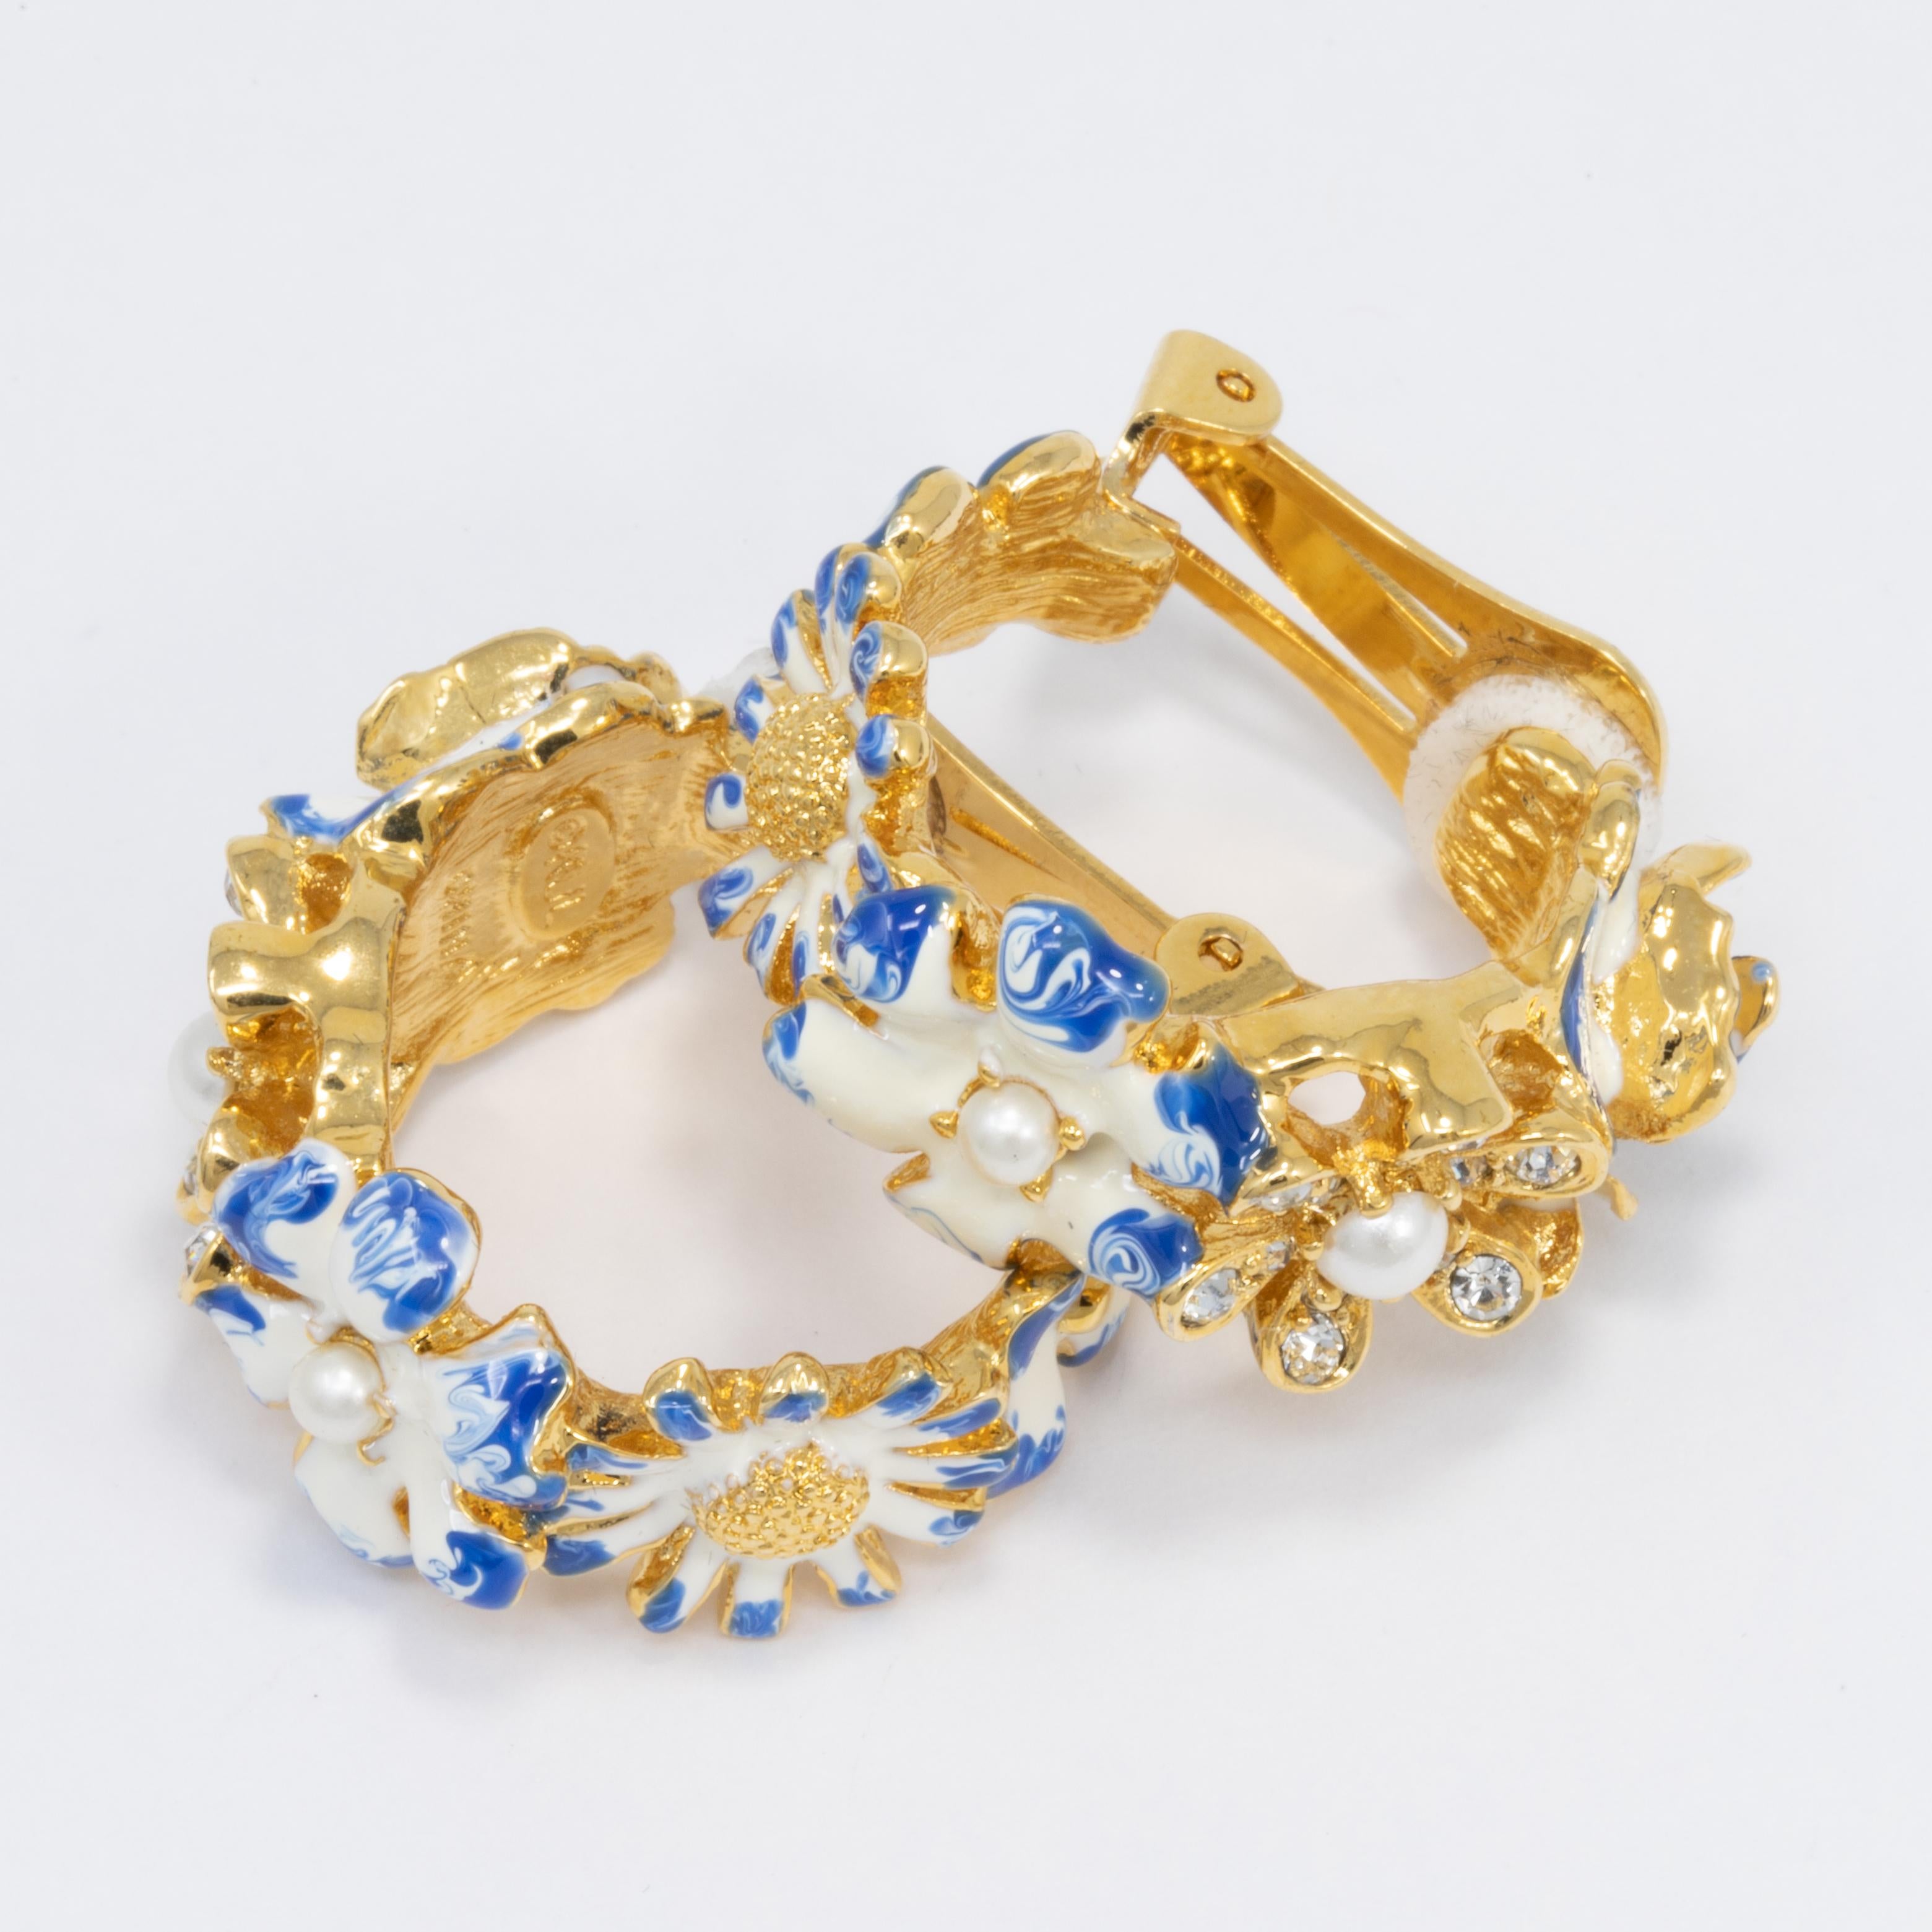 Ein Paar goldene Blumenohrringe, bemalt mit weißer und blauer Emaille und akzentuiert mit Kunstperlen und Kristallen. Von Kenneth Jay Lane.

Punzierungen: KJL

Vergoldet.